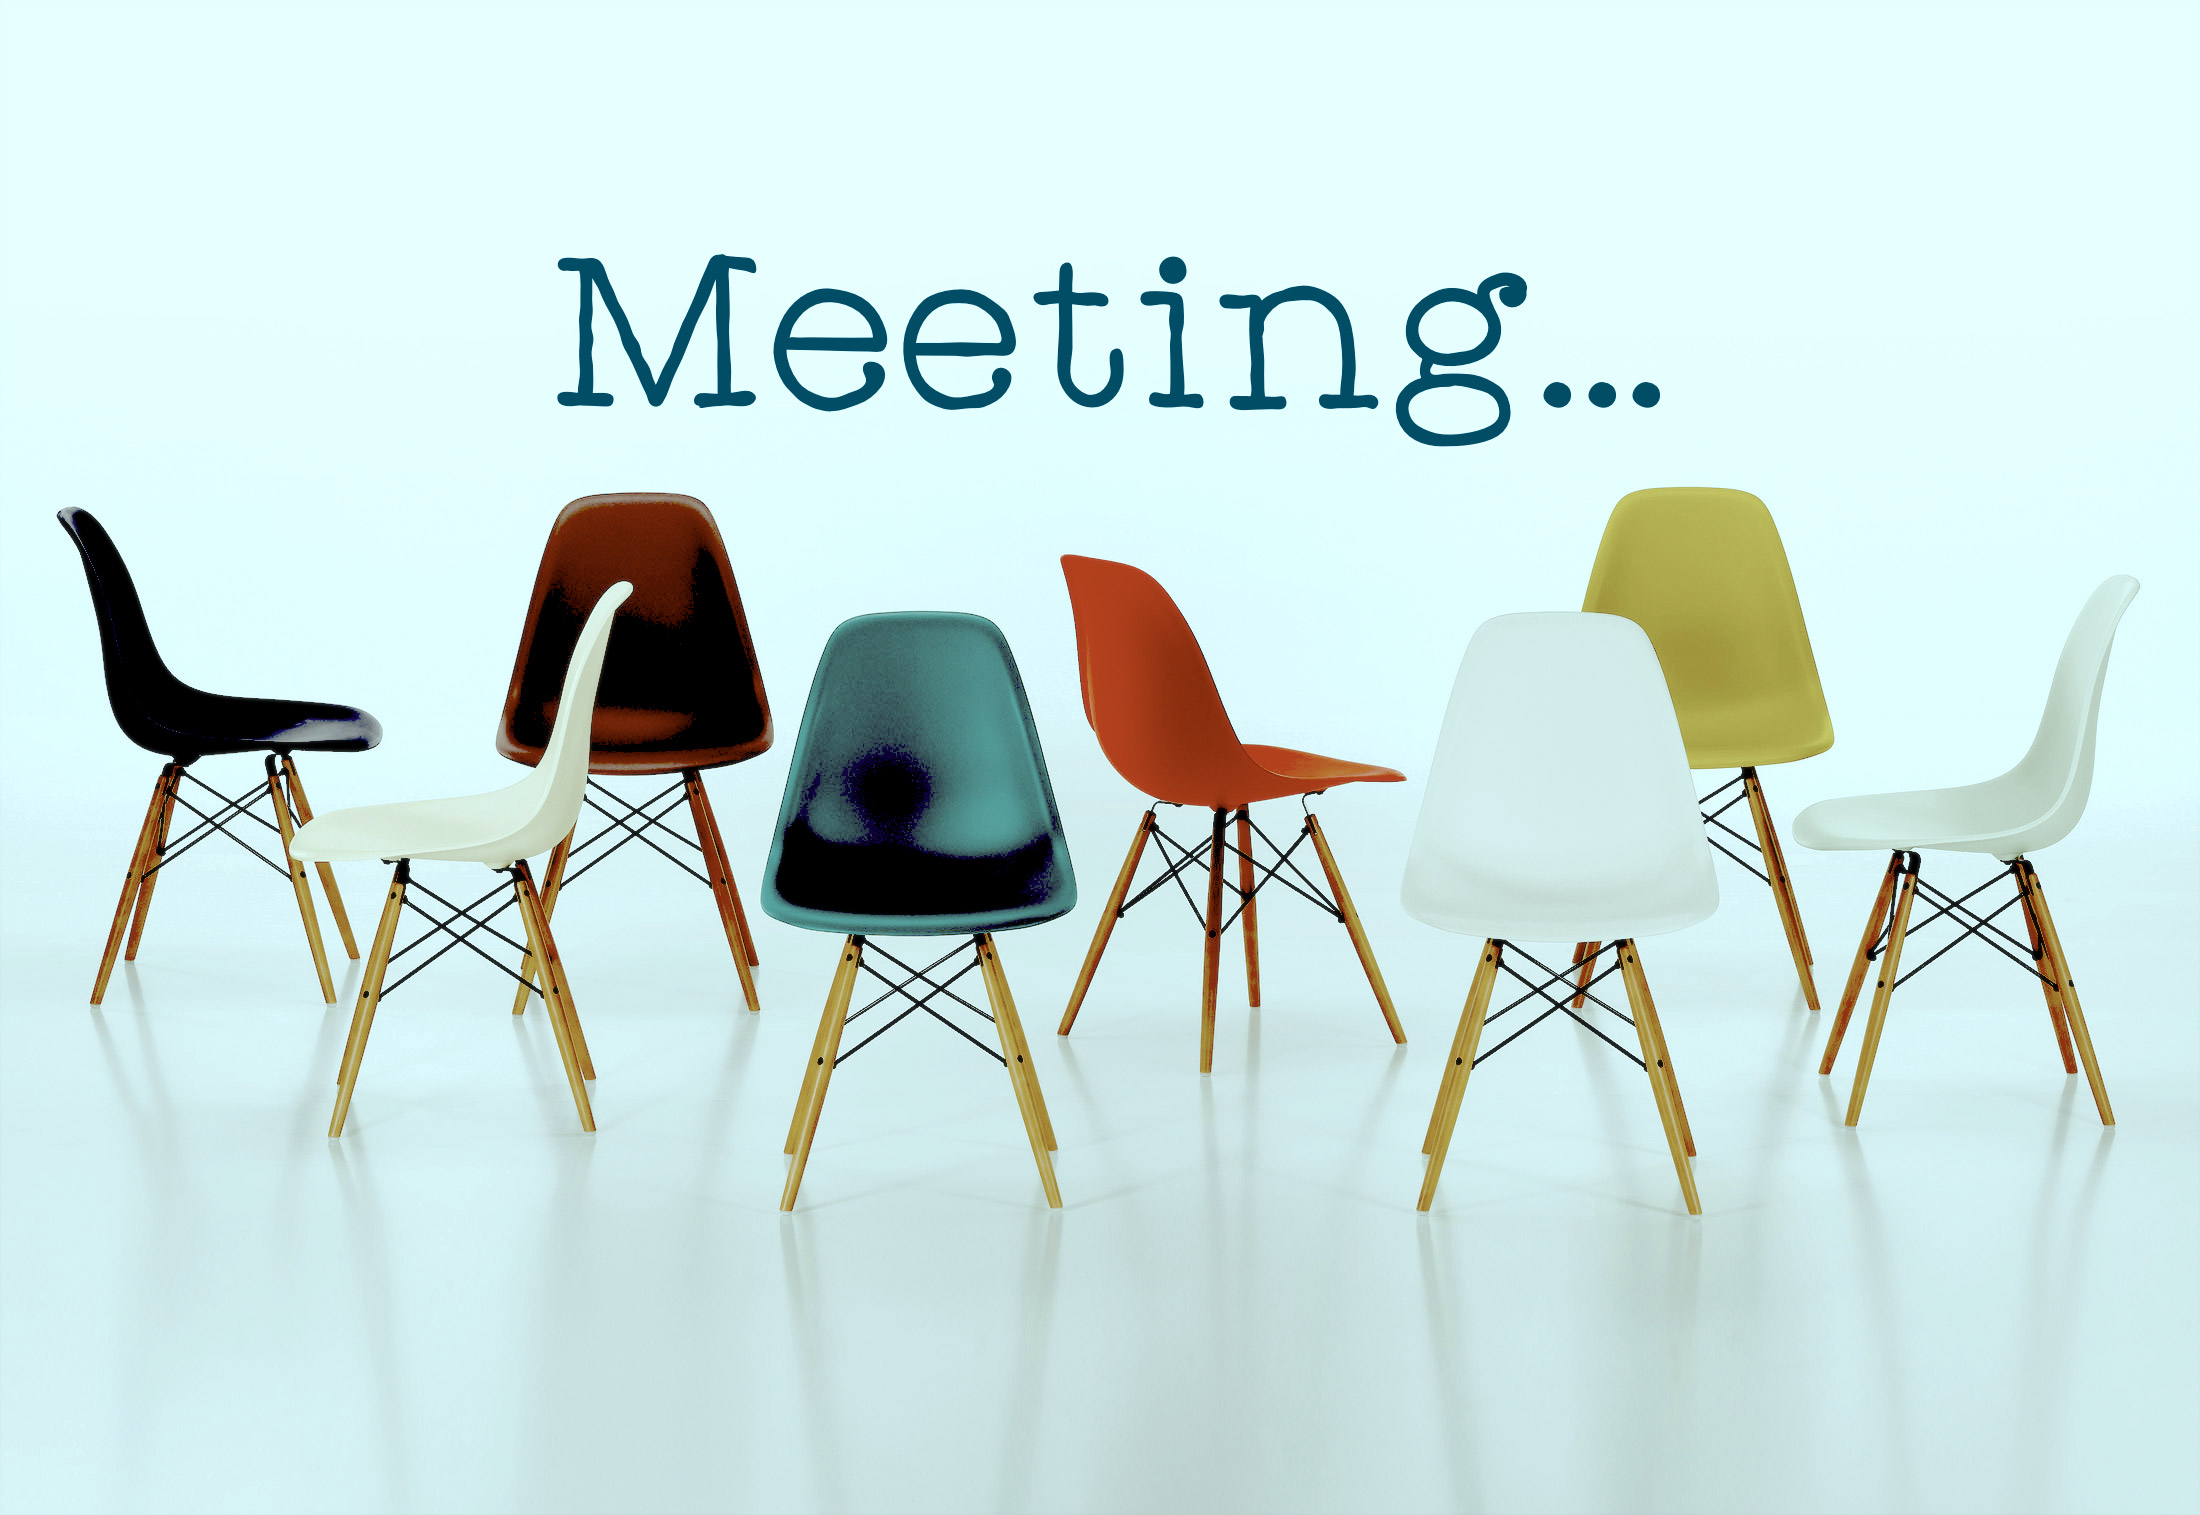 Members Social and Meeting